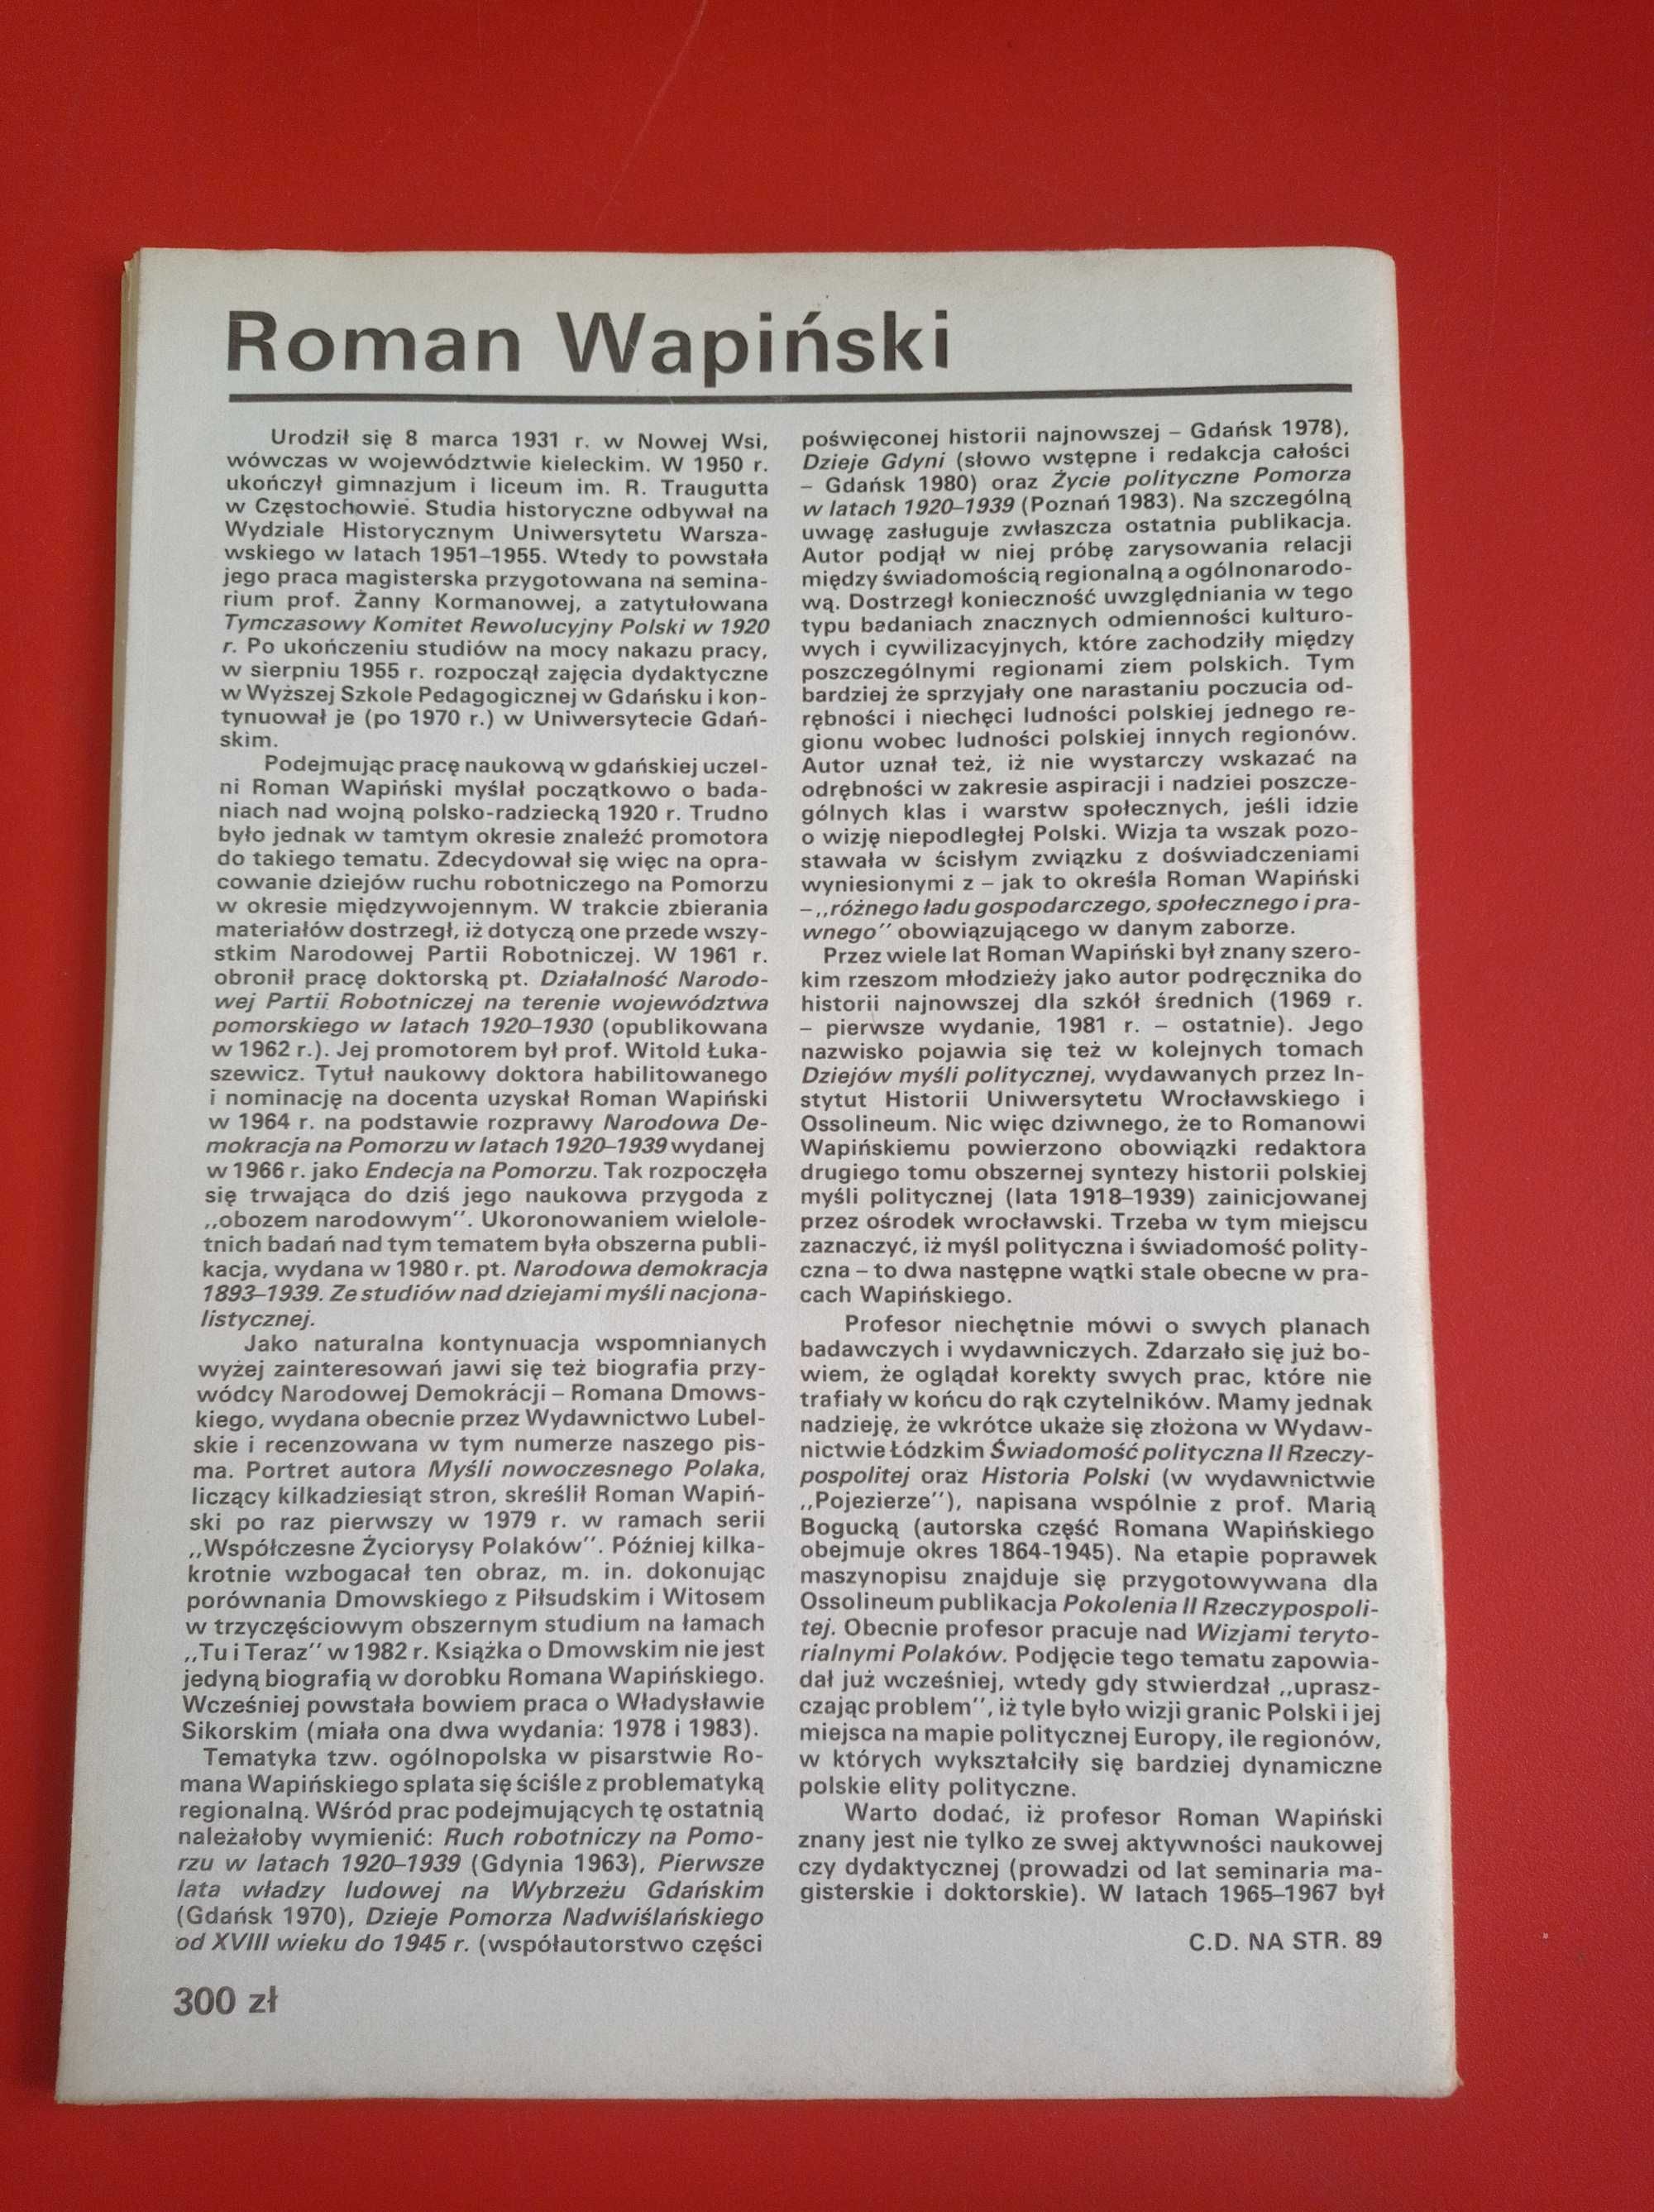 Nowe książki, nr 6 czerwiec 1989, Roman Wapiński